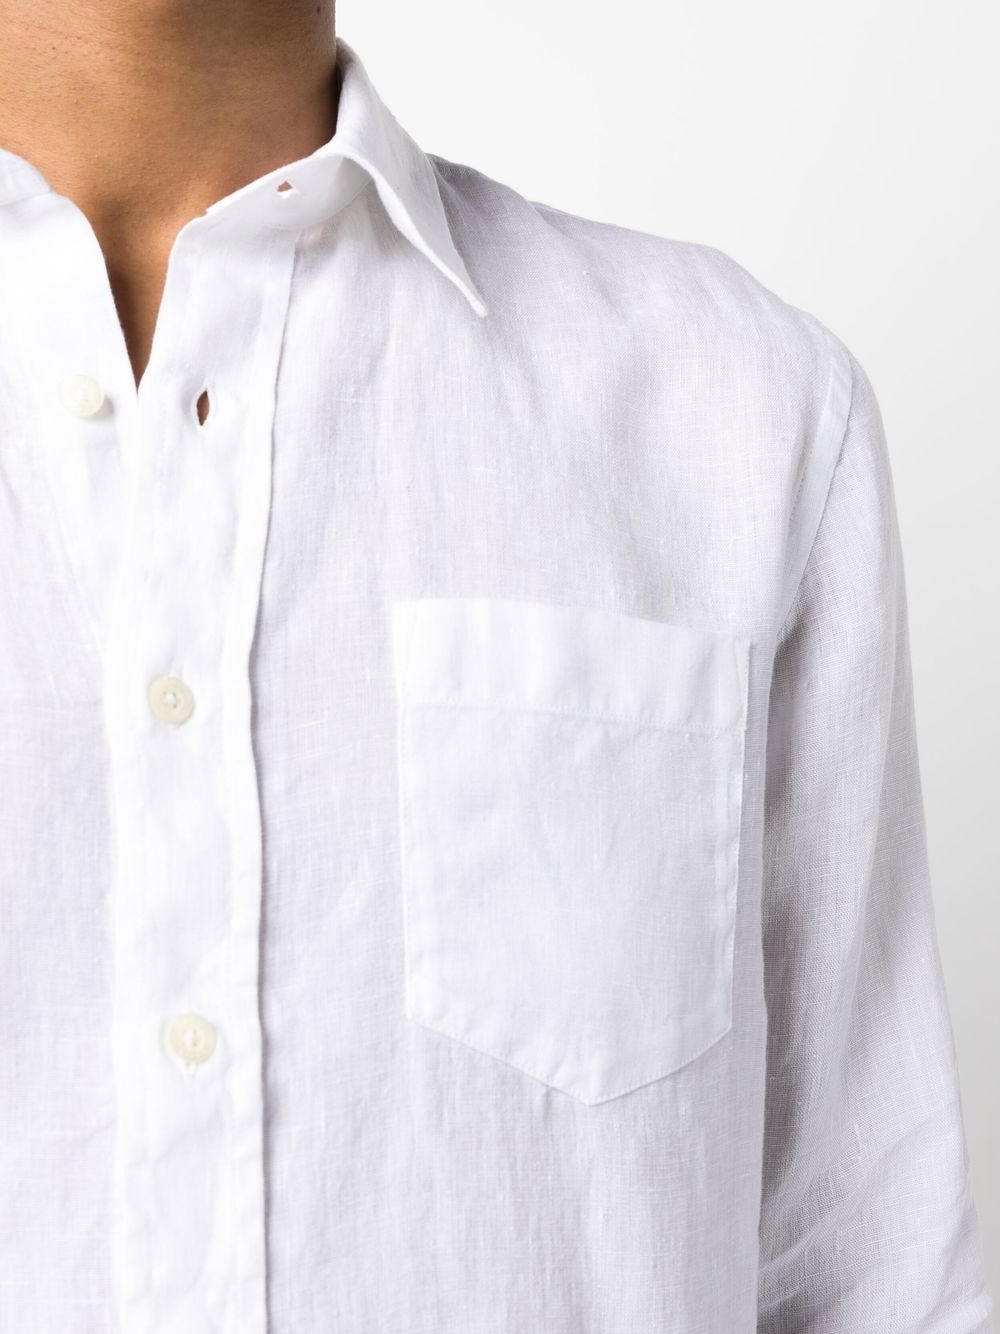 120% LinoRegular fit shirt at Fashion Clinic